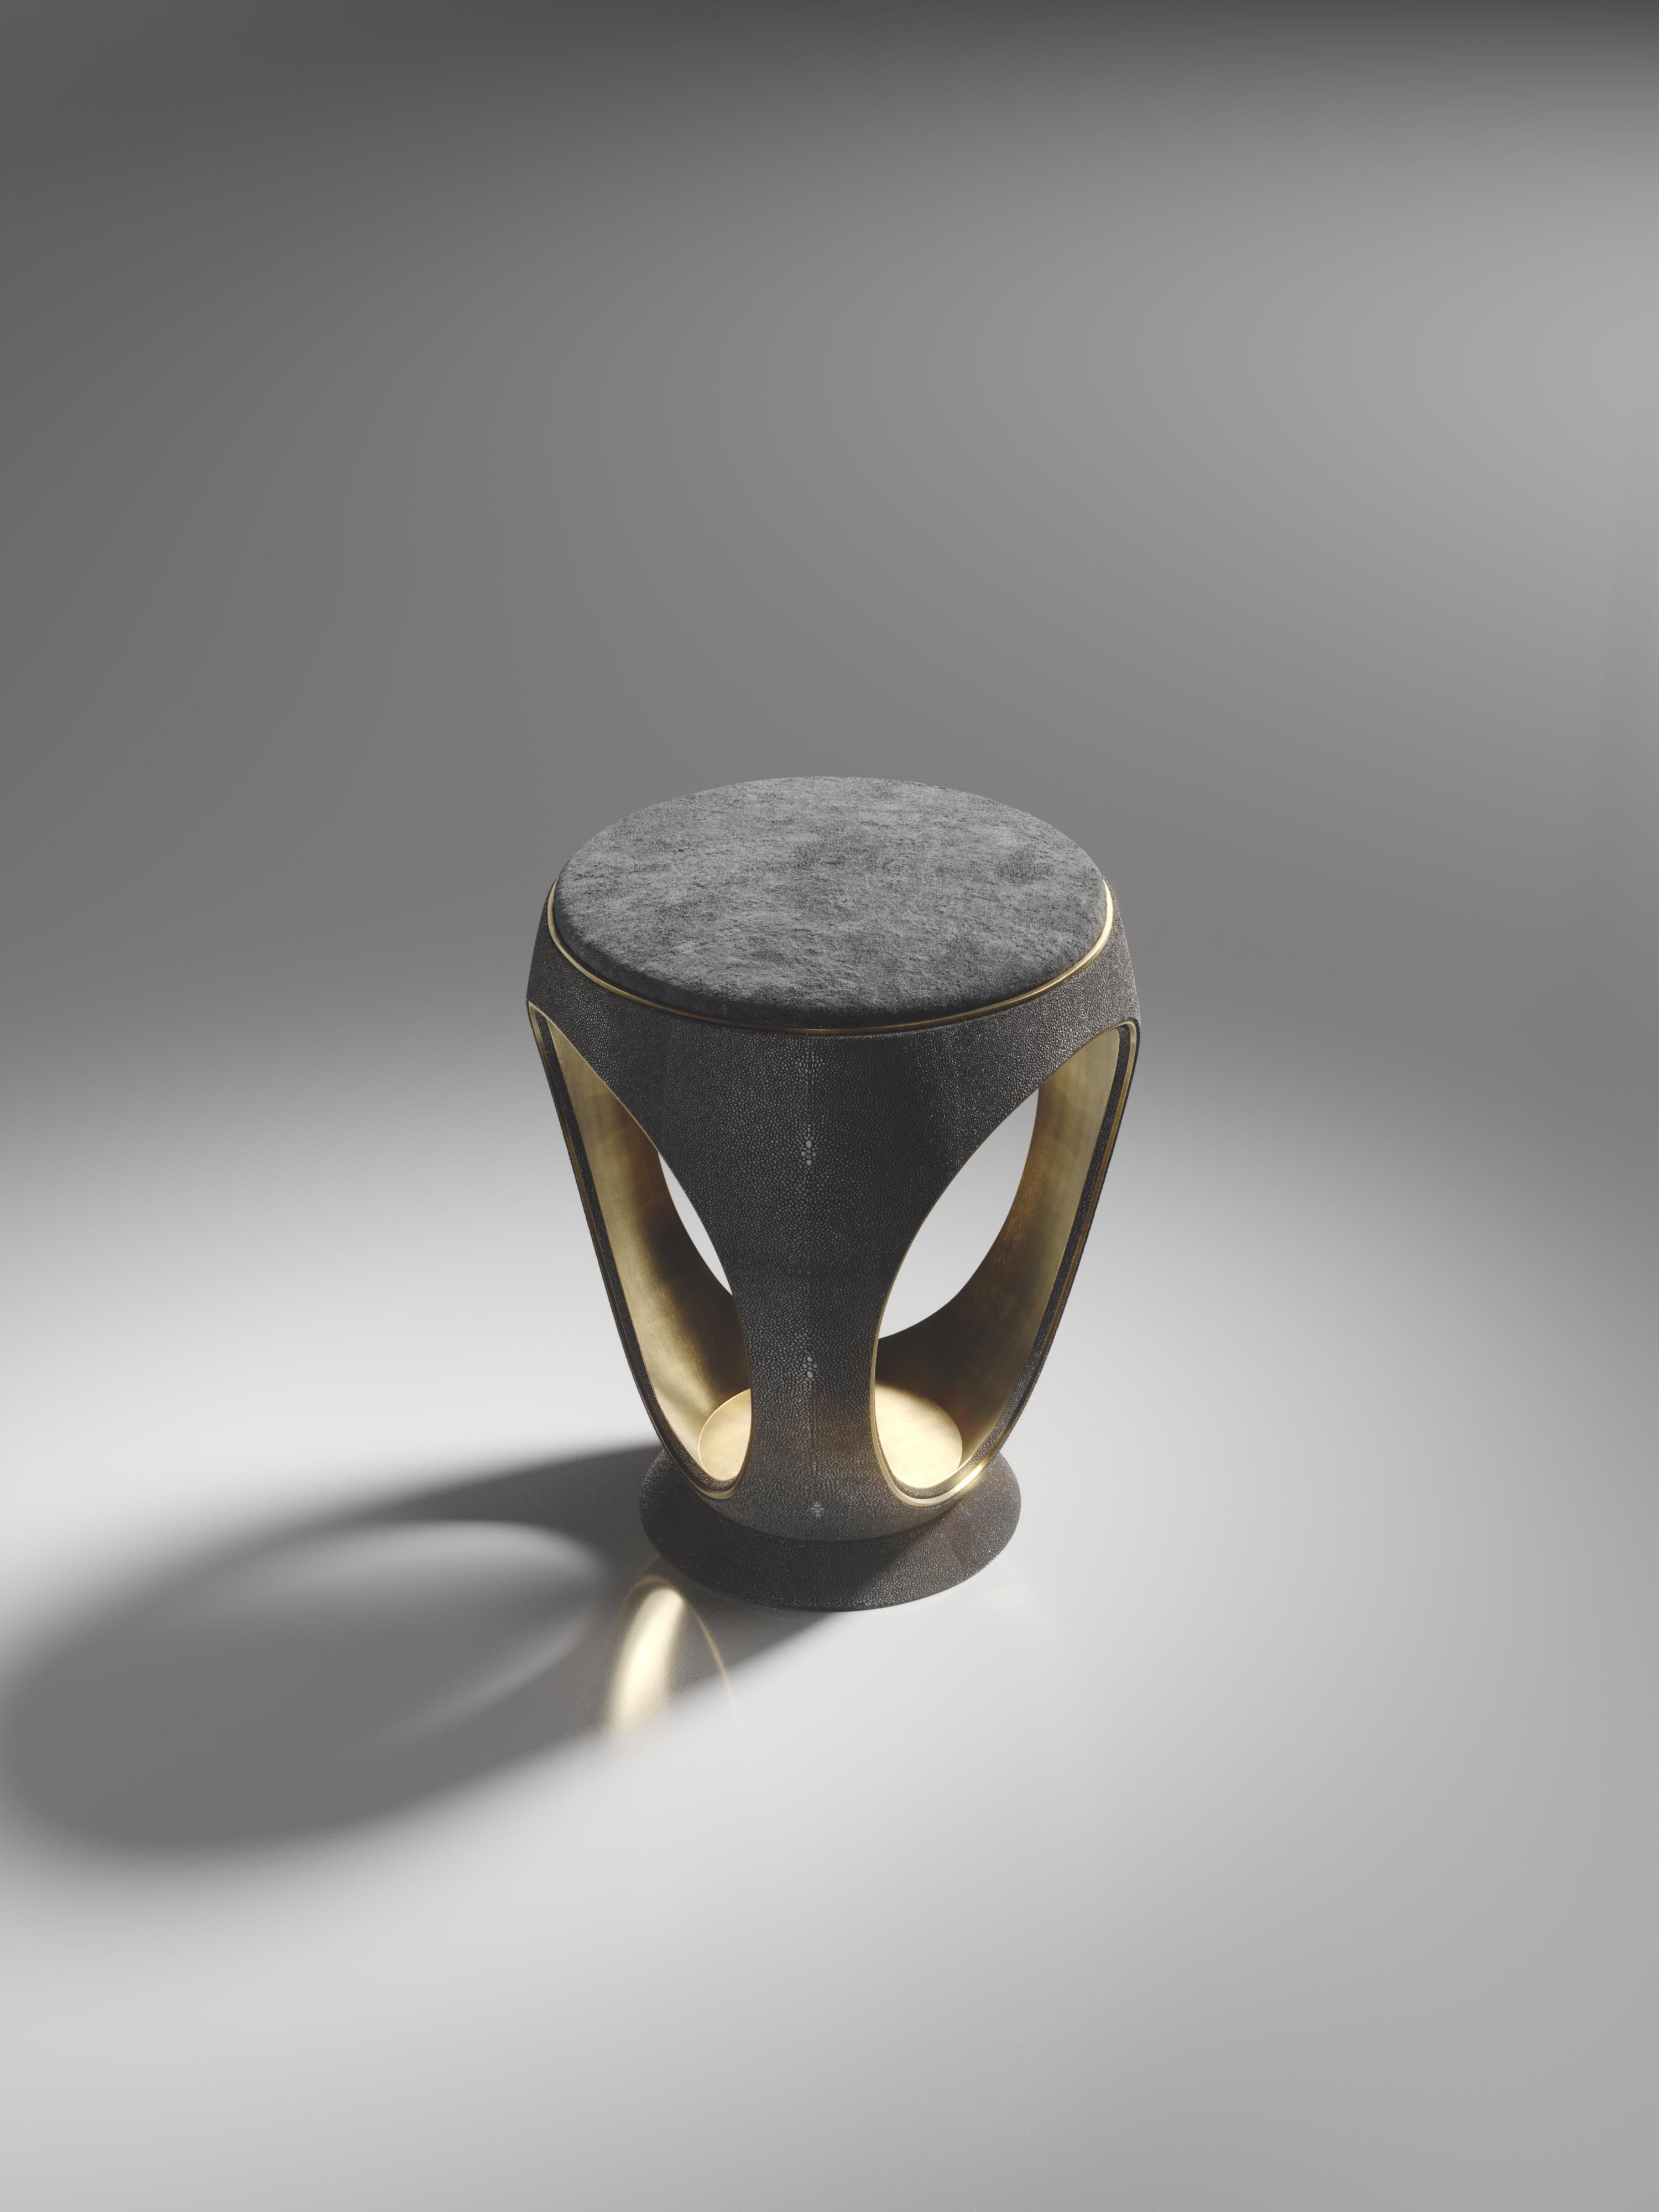 Lo sgabello ad anello in zigrino nero è uno dei pezzi più iconici della Collezione R & Y Augousti. Questo pezzo, dalla forma scultorea e simile a un gioiello, è stato rinnovato con un discreto dettaglio in ottone bronzato e patinato all'esterno,